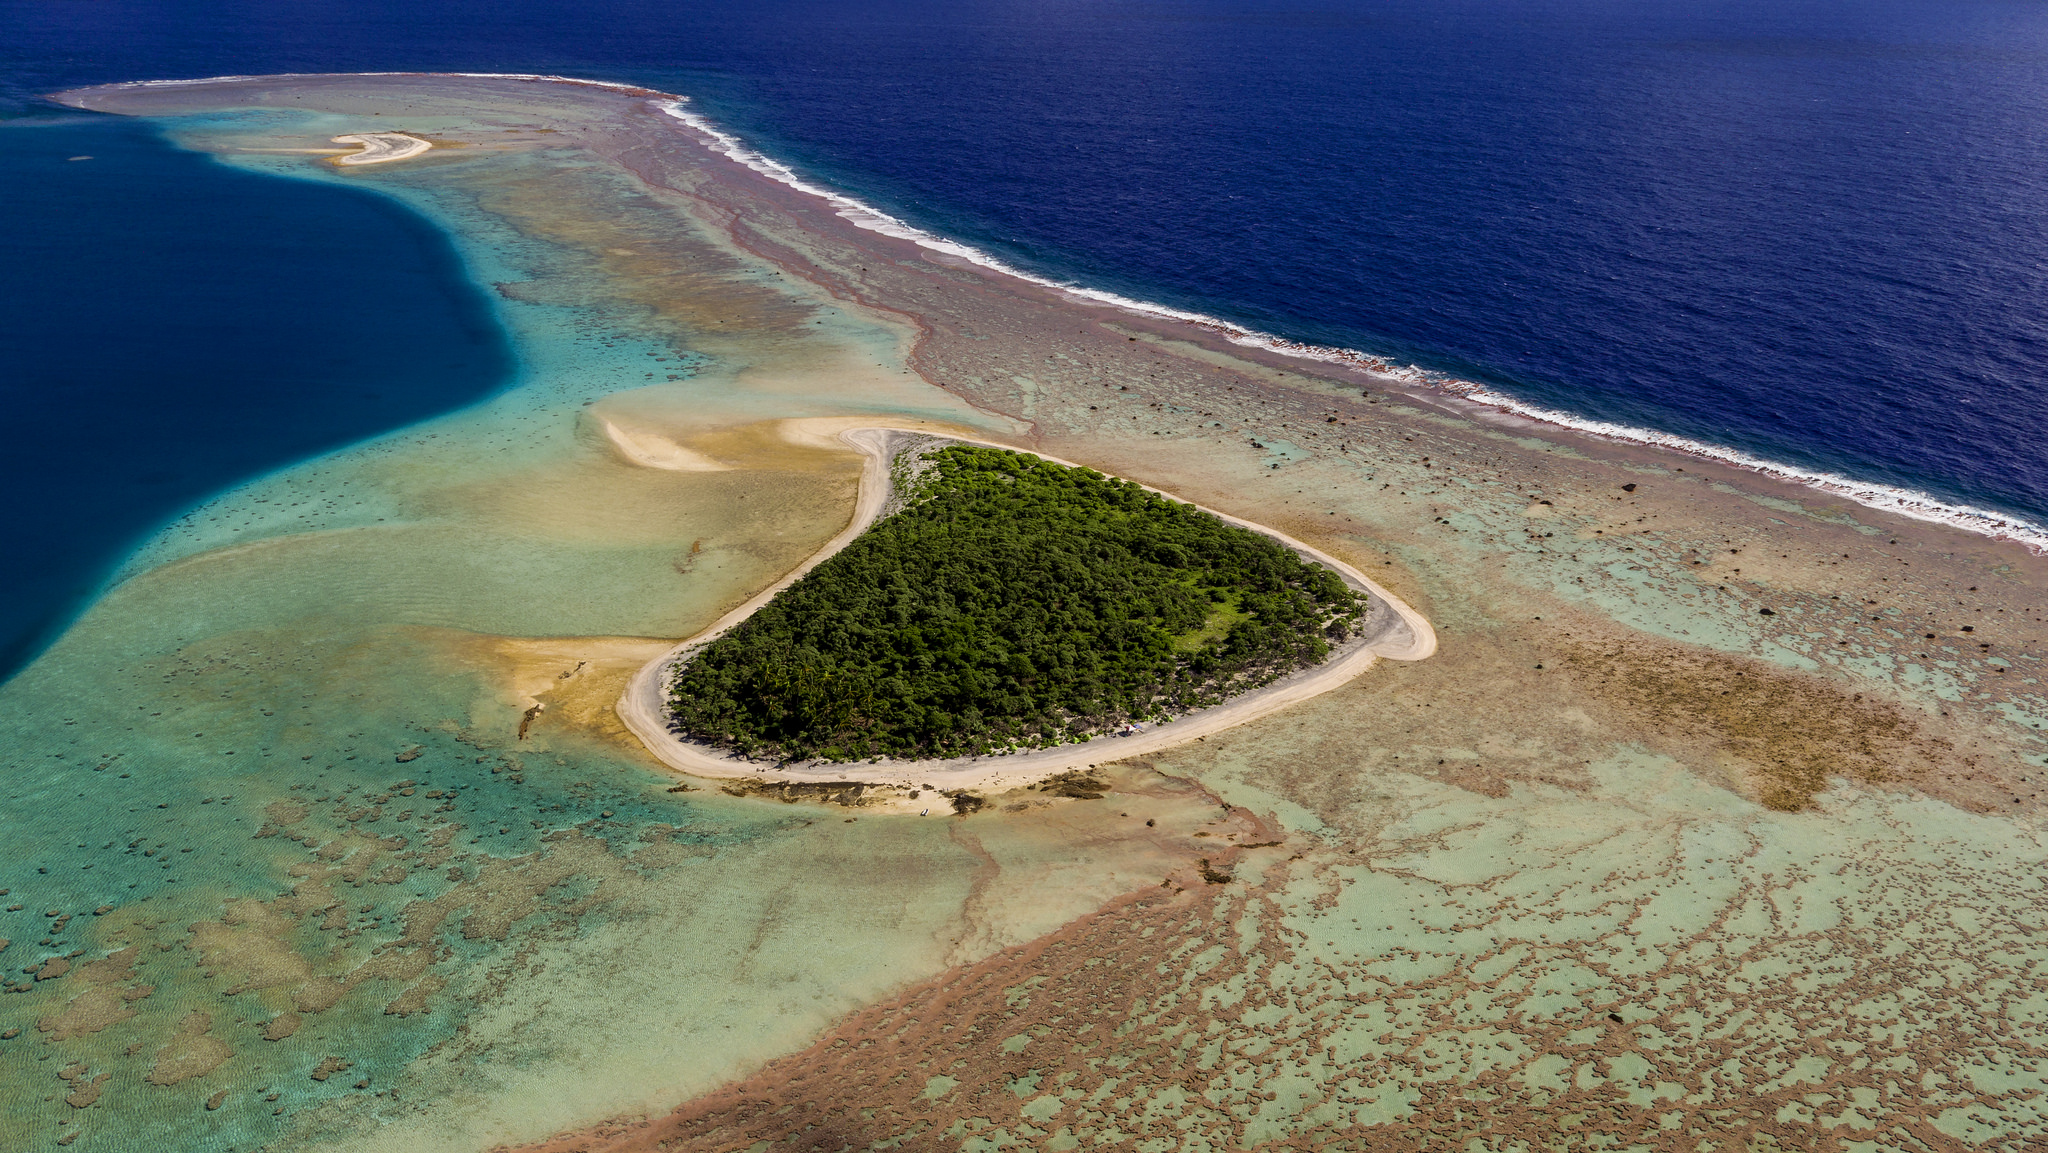 Остров кавер. Атолл Нукуоро. Атолл Рокас. Атолл Розе, американское Самоа. Атолл в тихом океане.